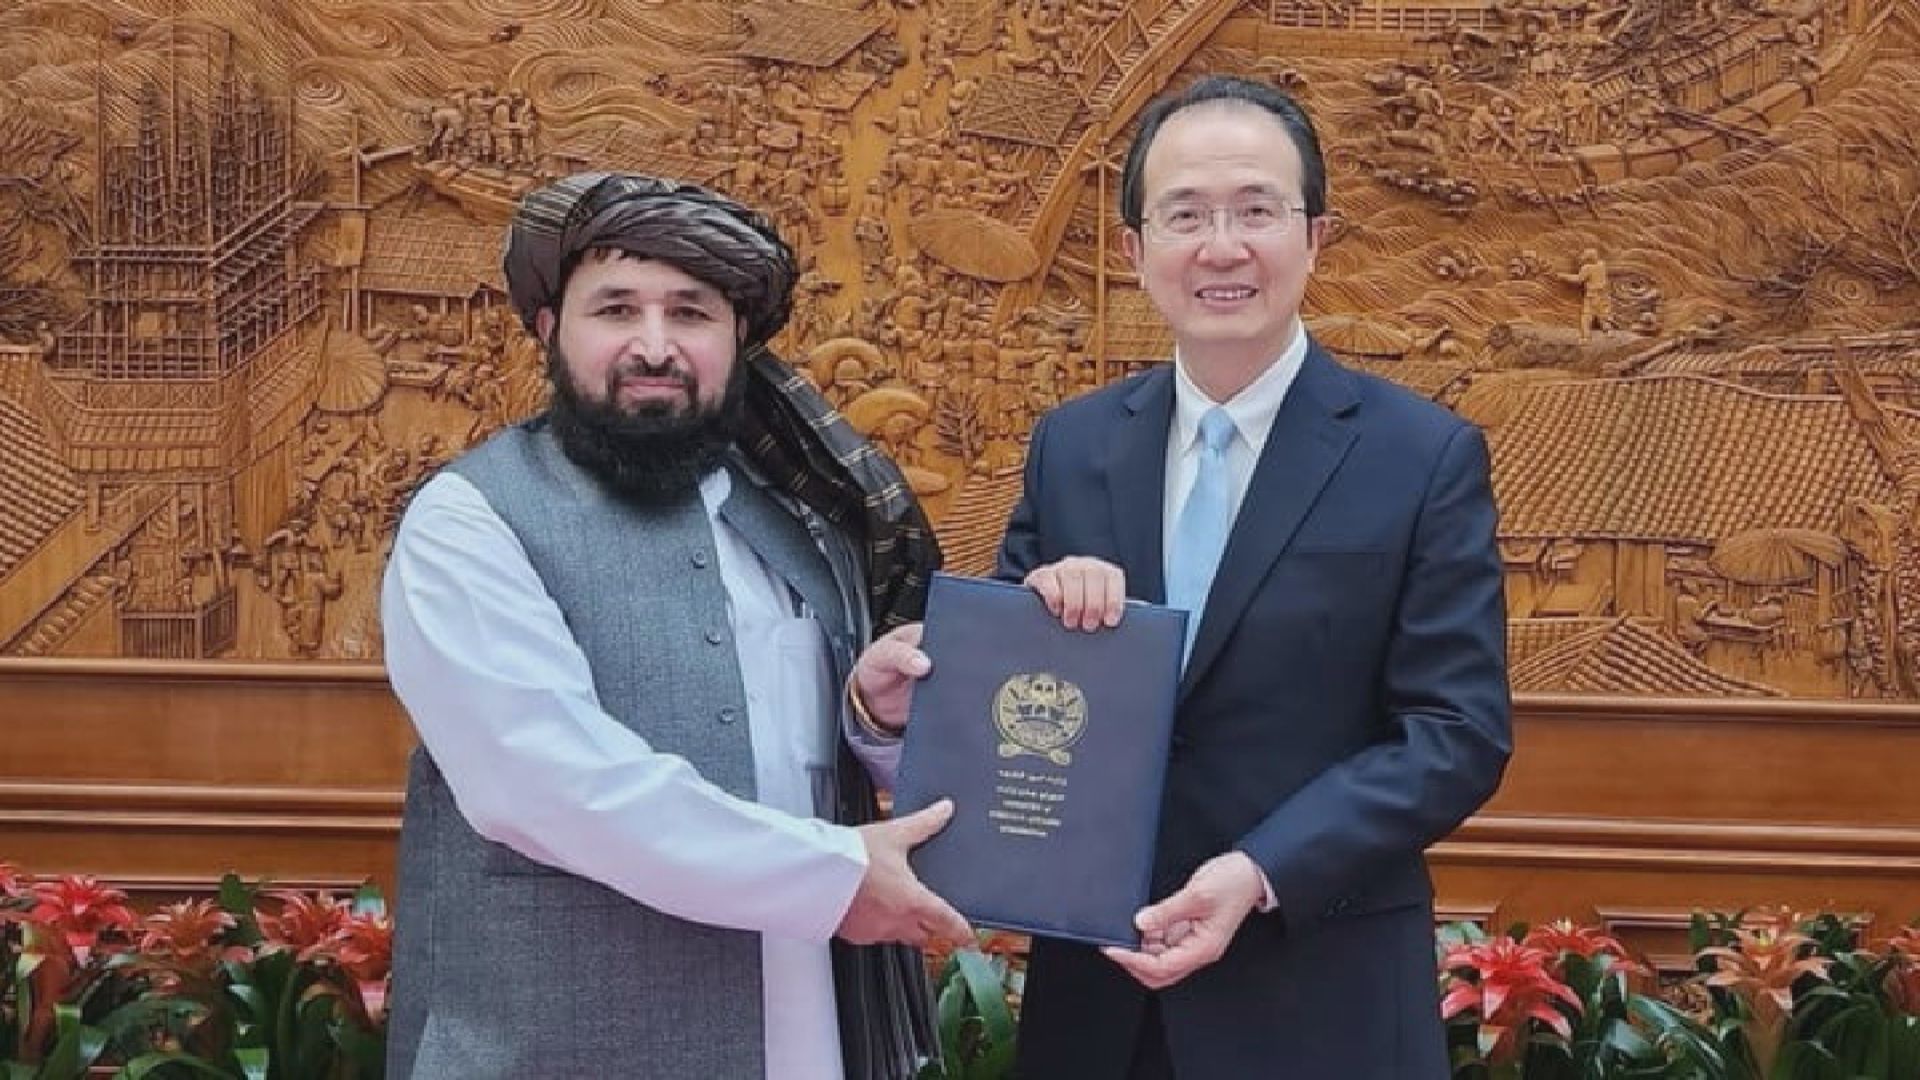 阿富汗駐華大使到北京履新 是塔利班政府首次正式派駐外大使